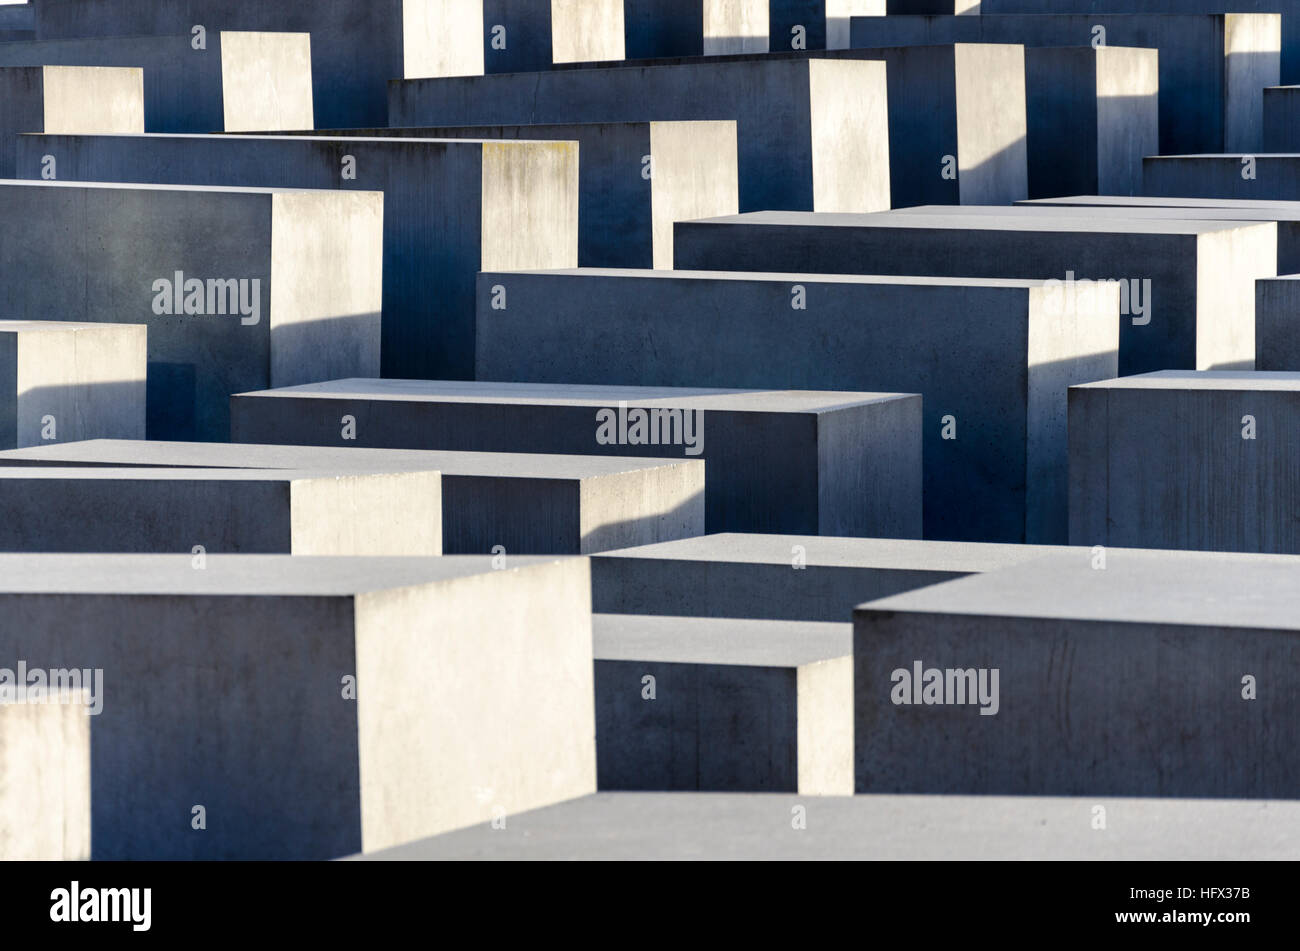 Détails de Mémorial aux Juifs assassinés d'Europe Denkmal für die ermordeten Juden Europas. Berlin, Allemagne Banque D'Images